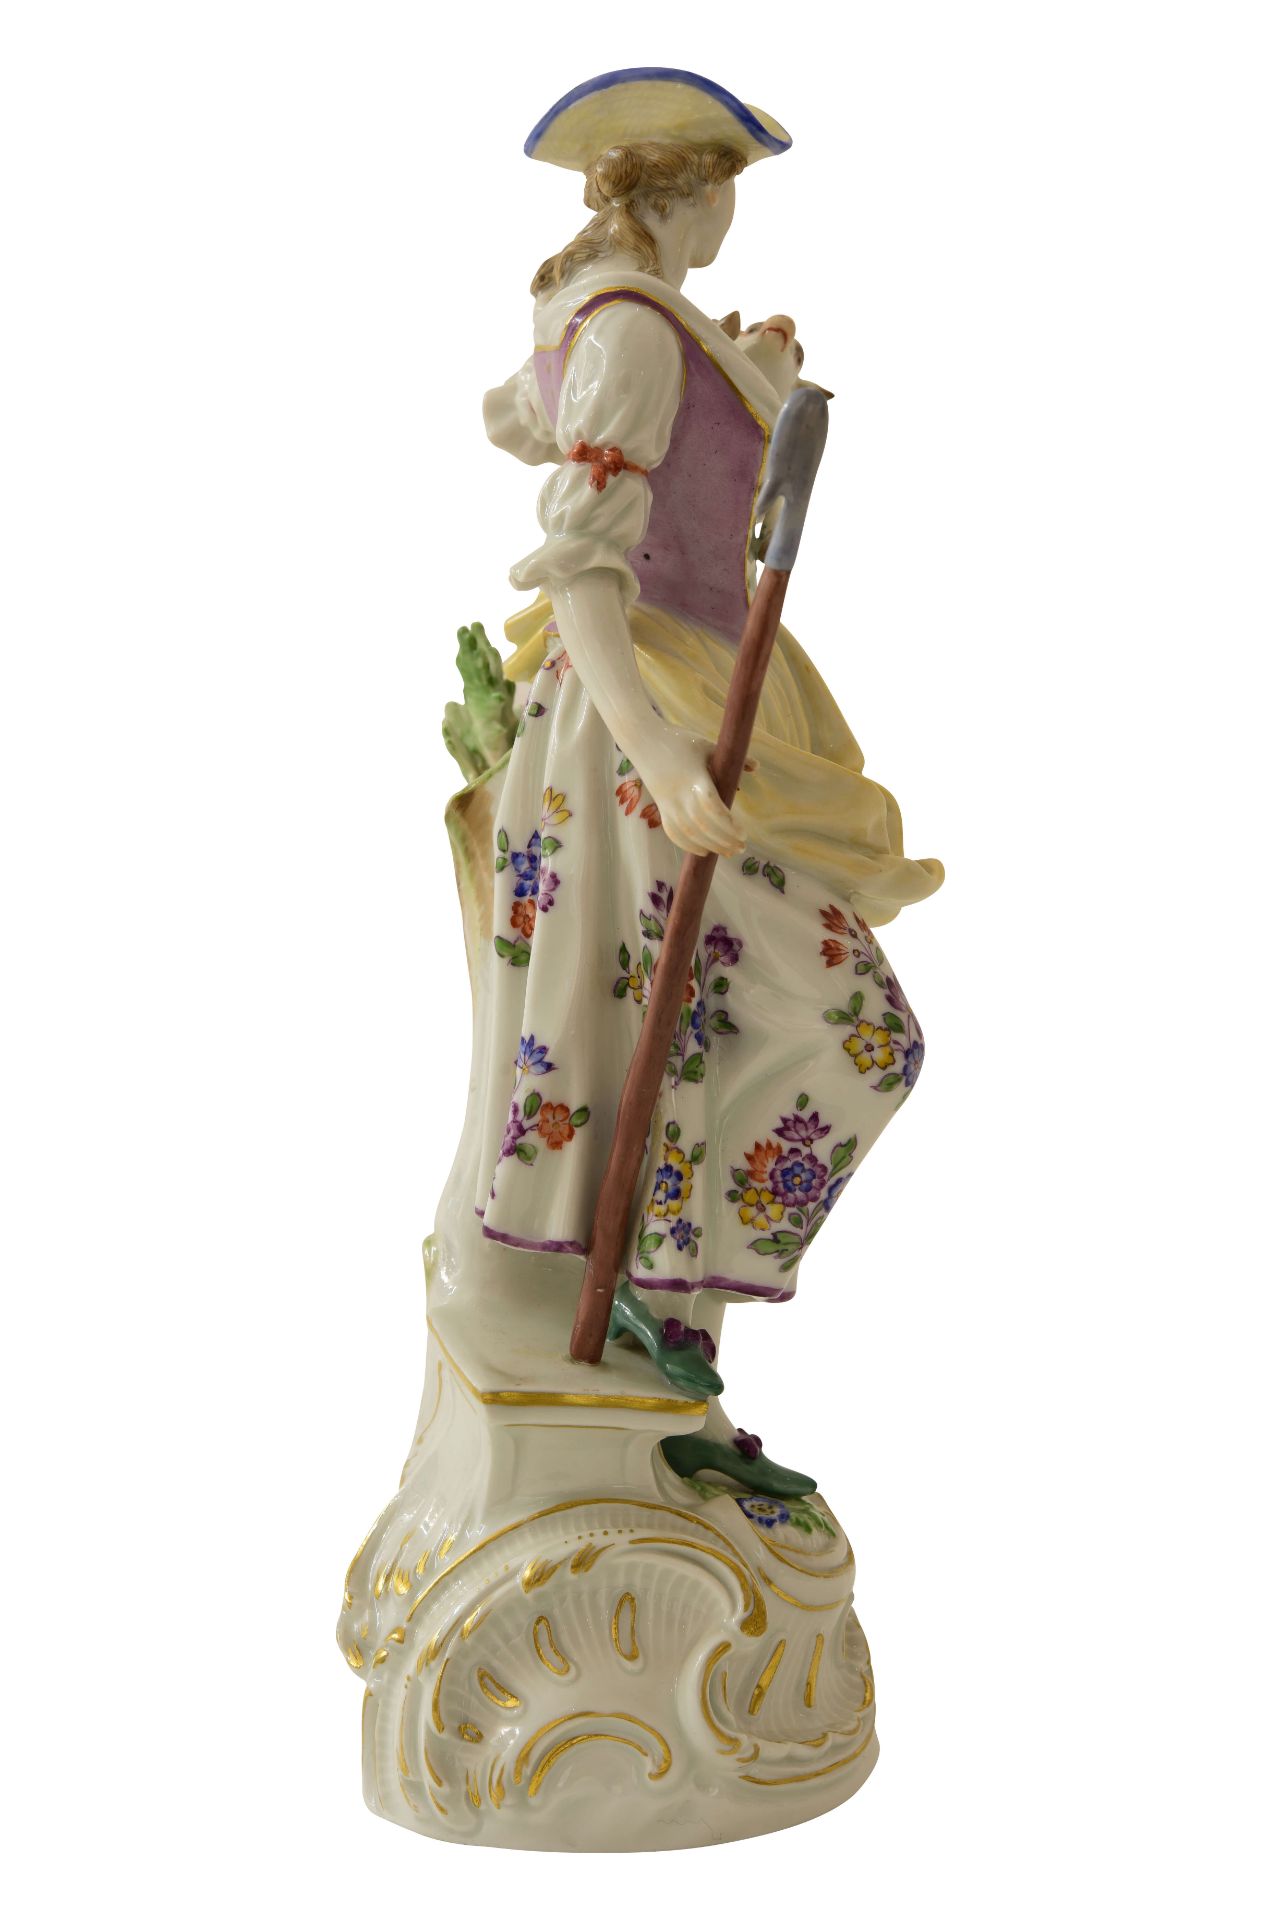 Große Figur "Schäferin" Meisen|Large Figurine "Shepherdess" Meissen - Bild 4 aus 7